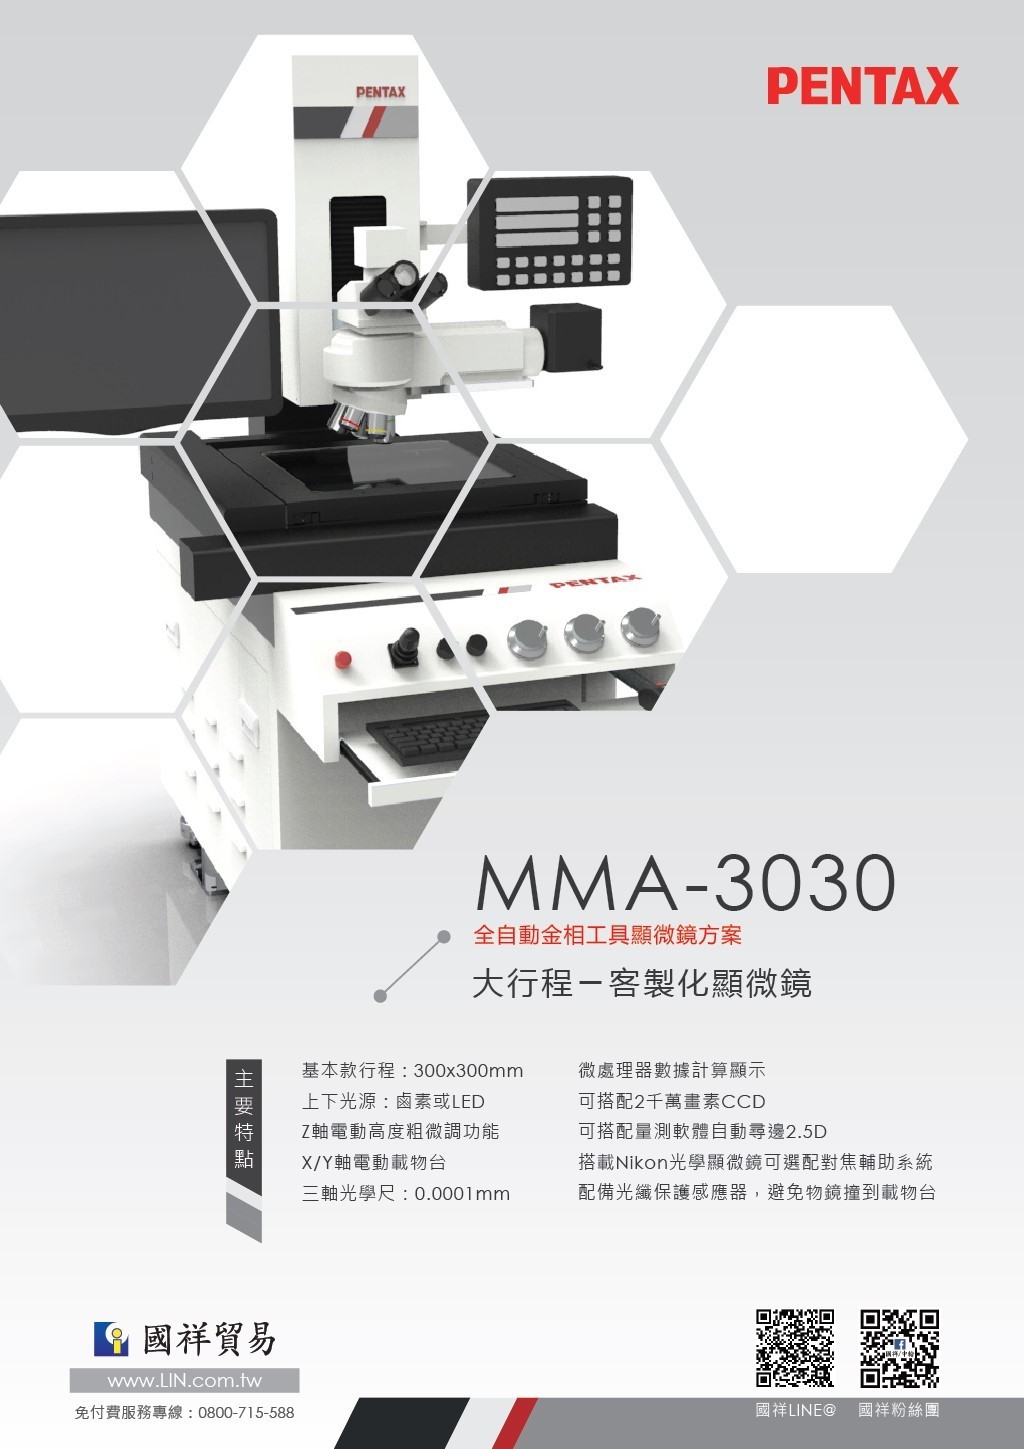 MMA - 3030 全自動金相工具顯微鏡方案